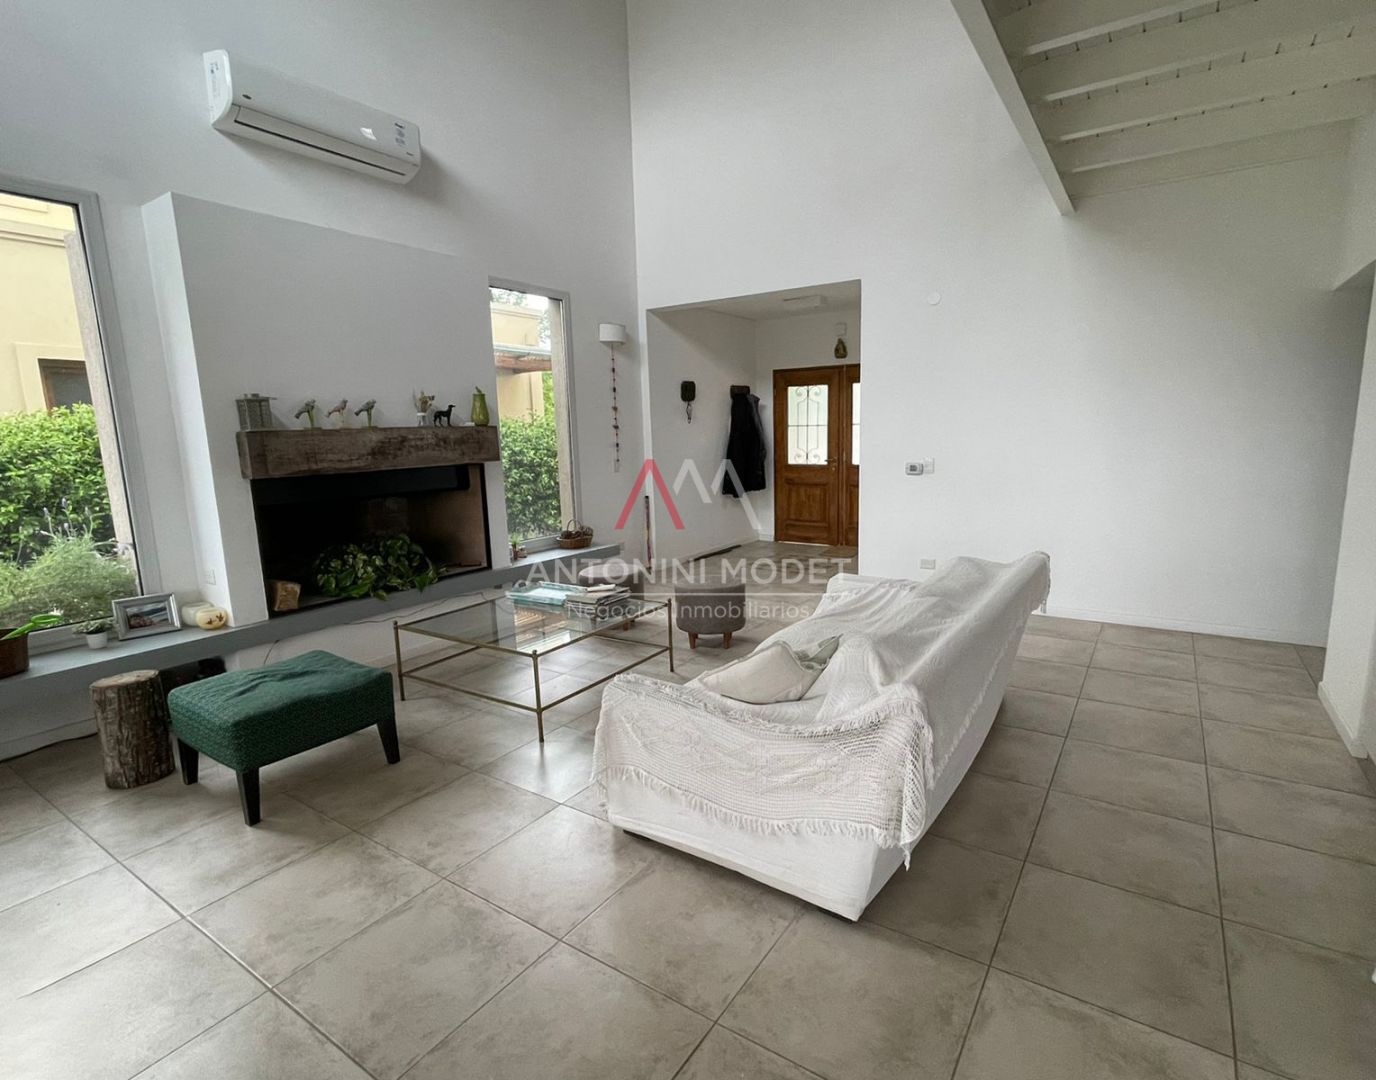 #3218856 | Alquiler Temporal | Casa | Manzanares (Antonini Modet Negocios Inmobiliarios)